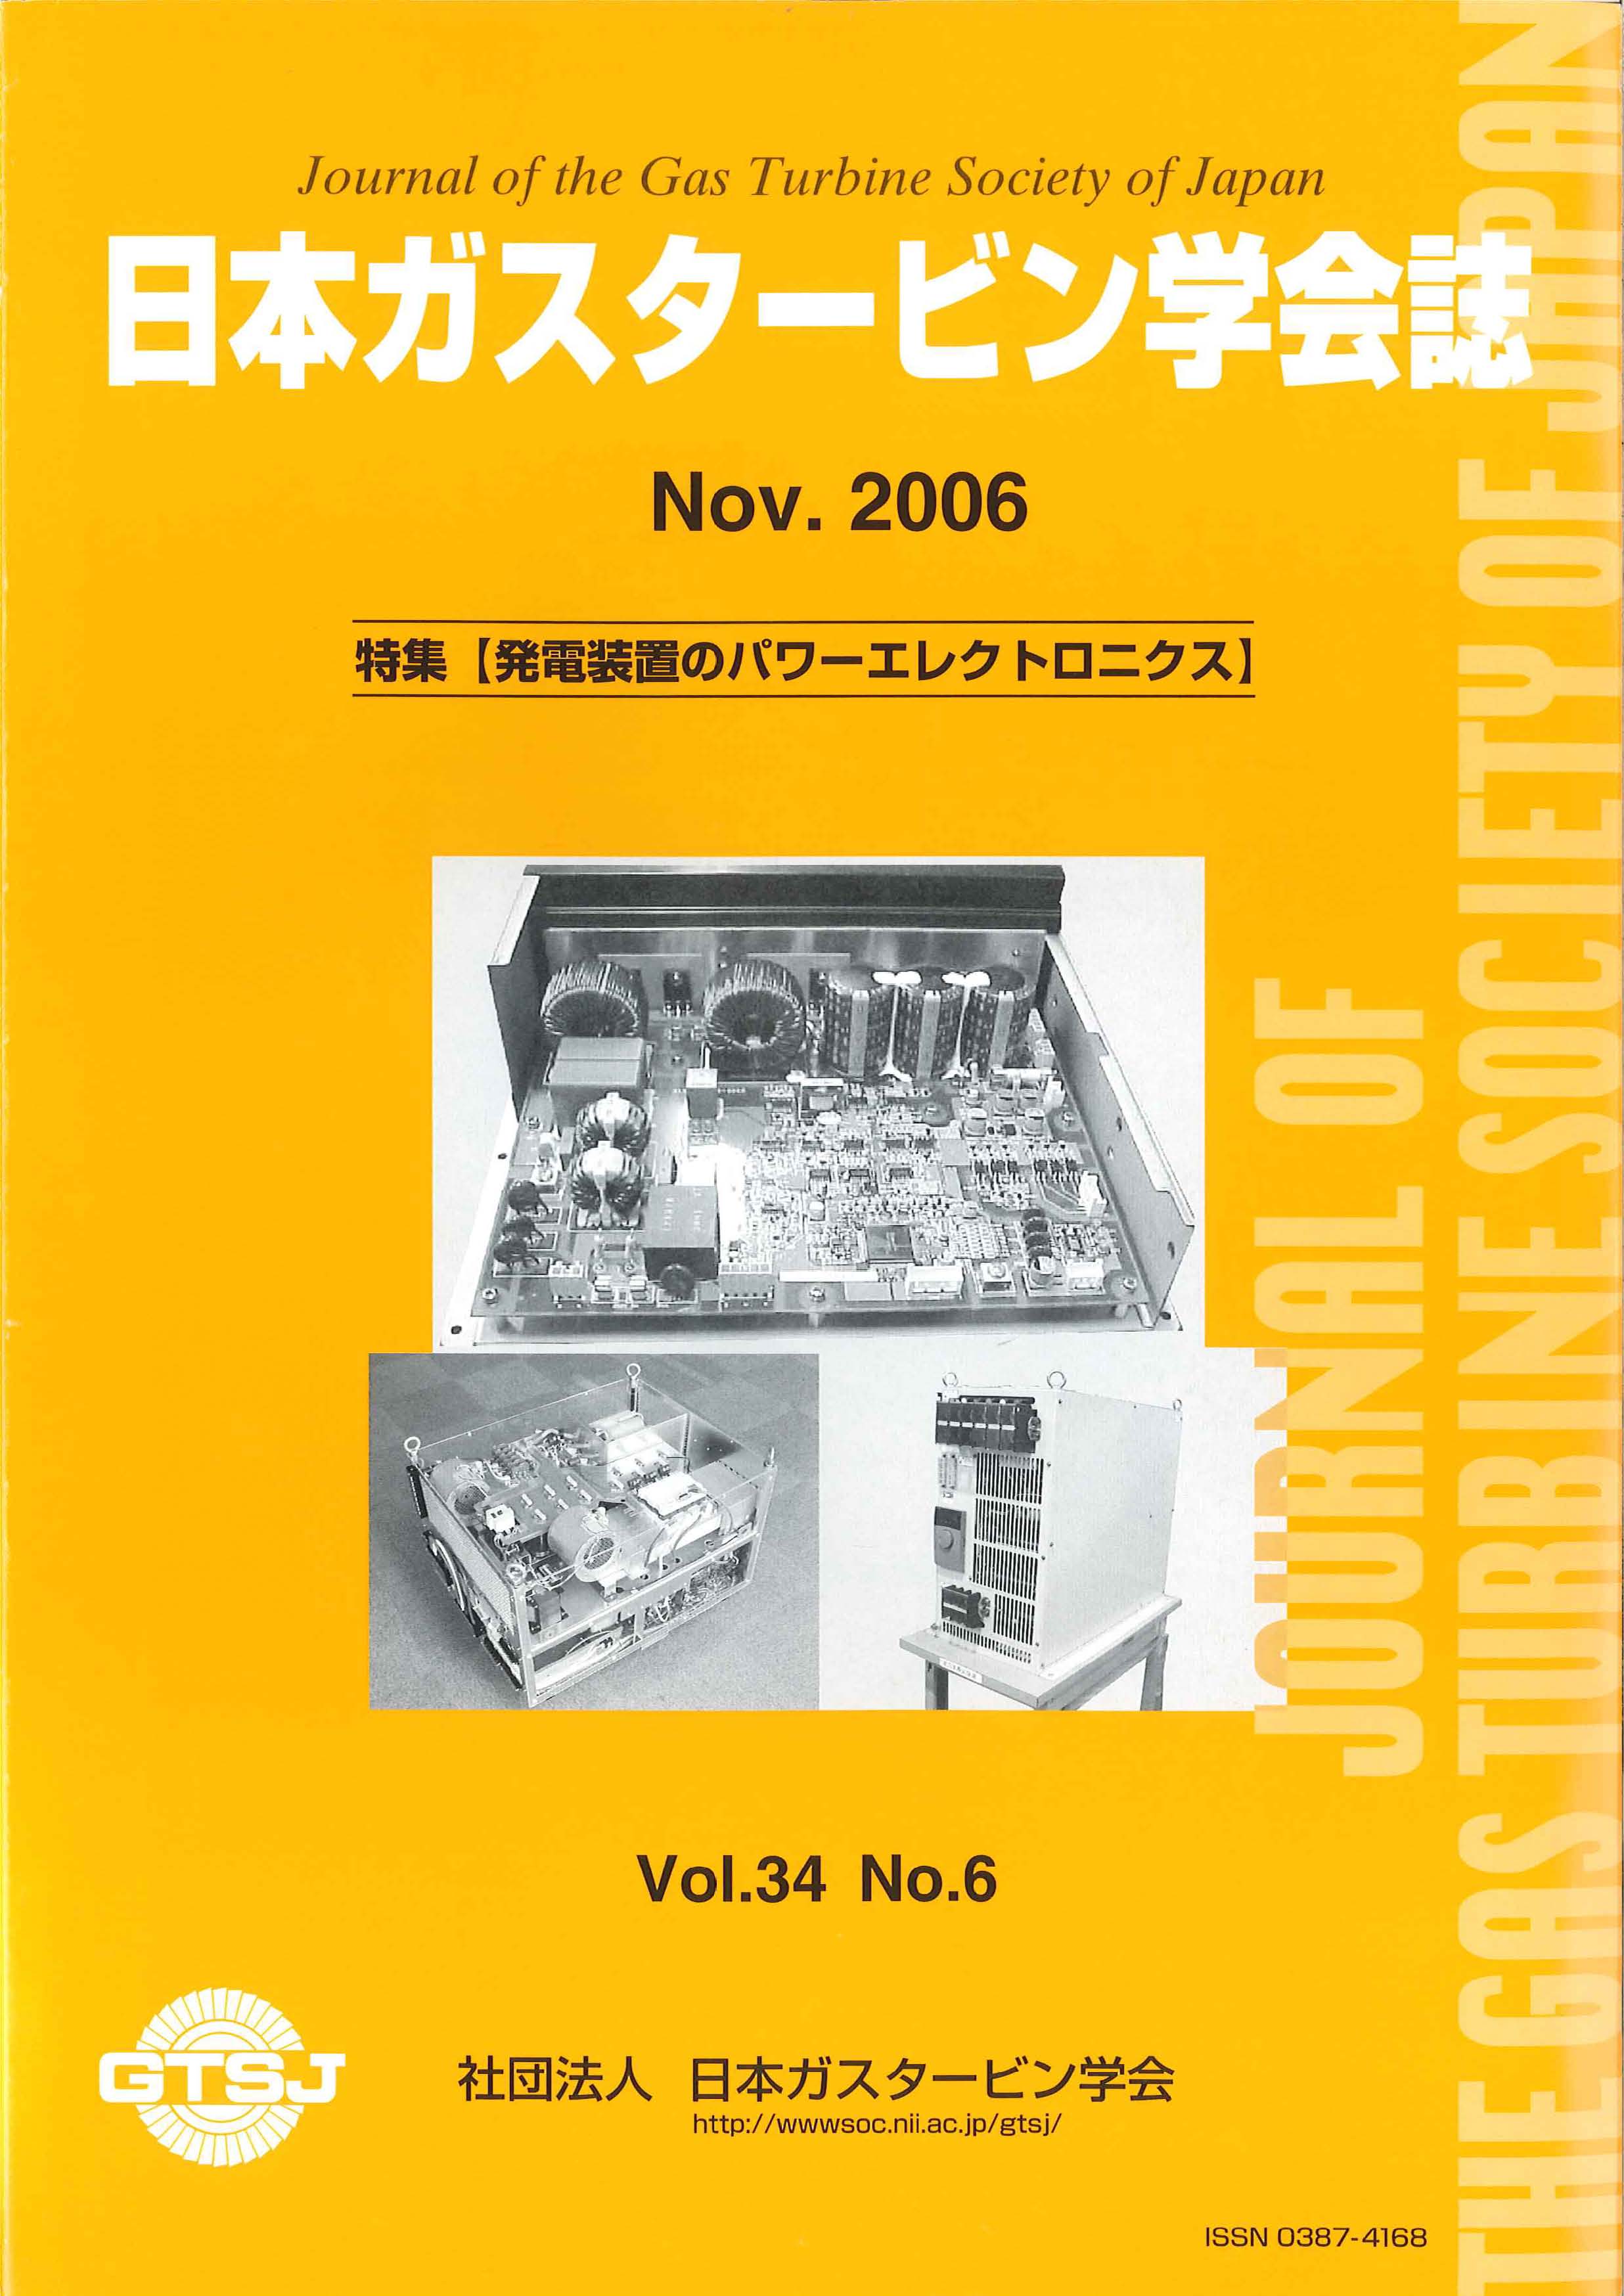 日本ガスタービン学会誌 Vol.34 No.6 2006年11月 表紙画像